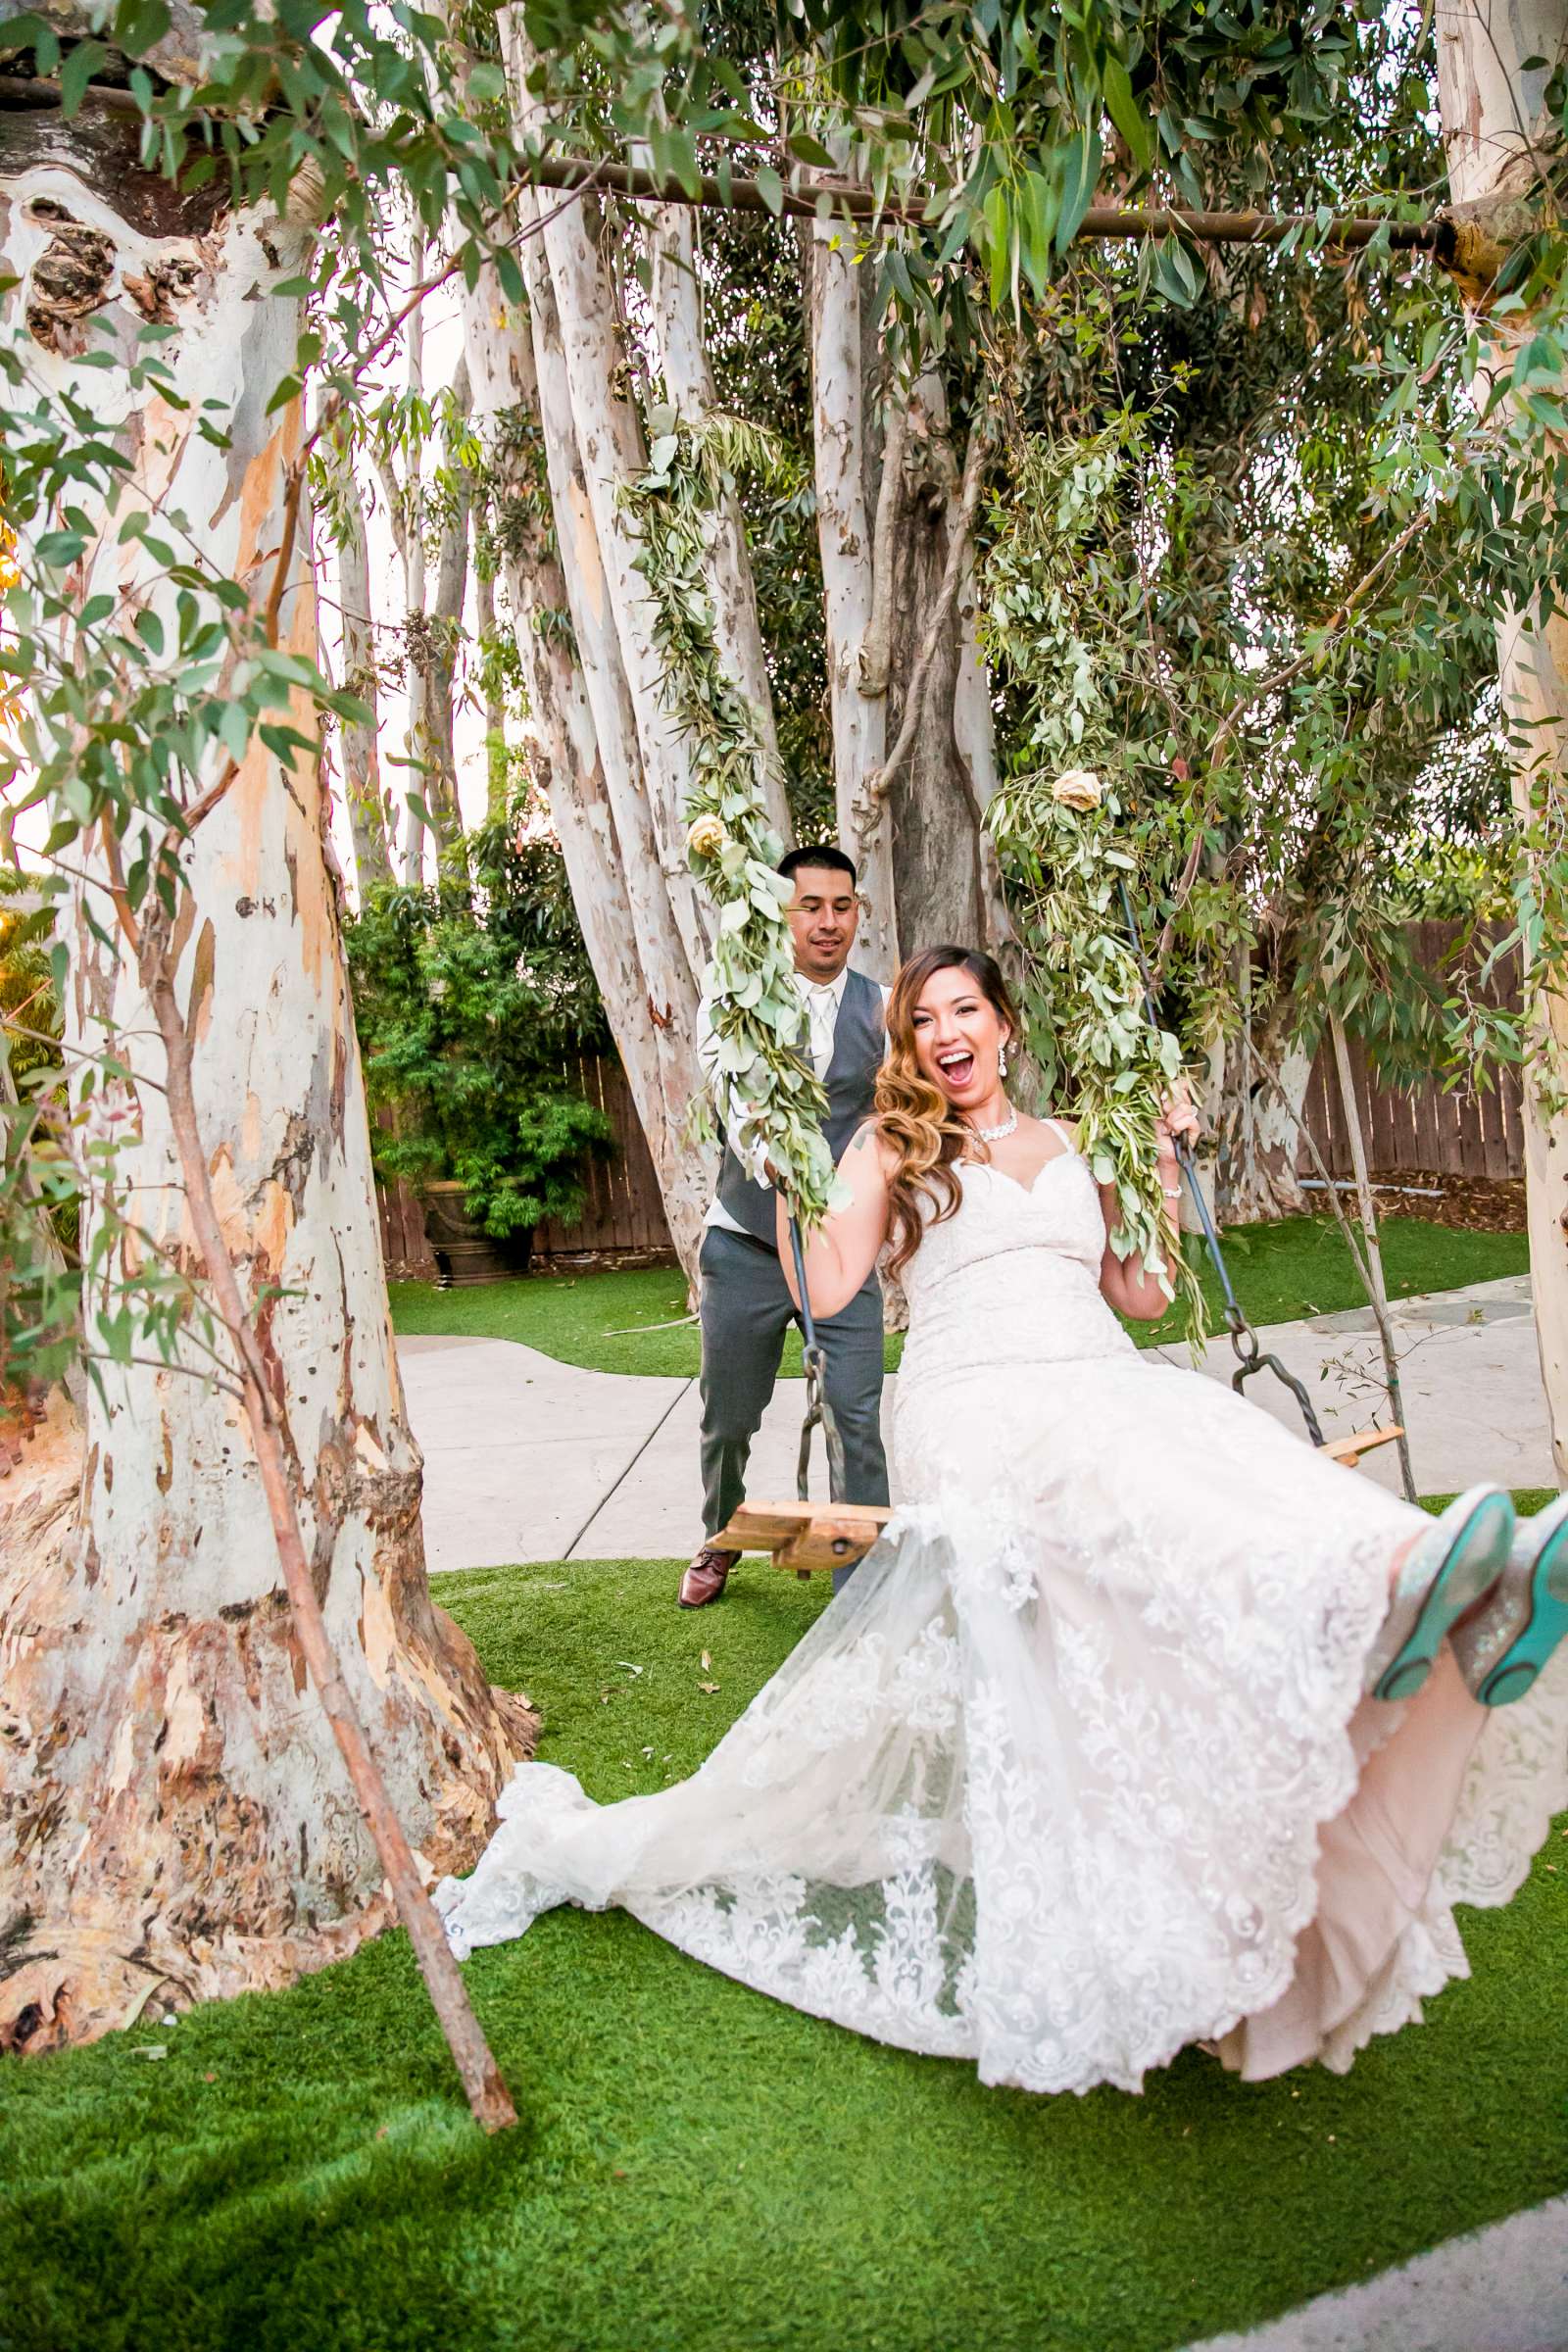 Twin Oaks House & Gardens Wedding Estate Wedding, Merrilynn and Trey Wedding Photo #11 by True Photography